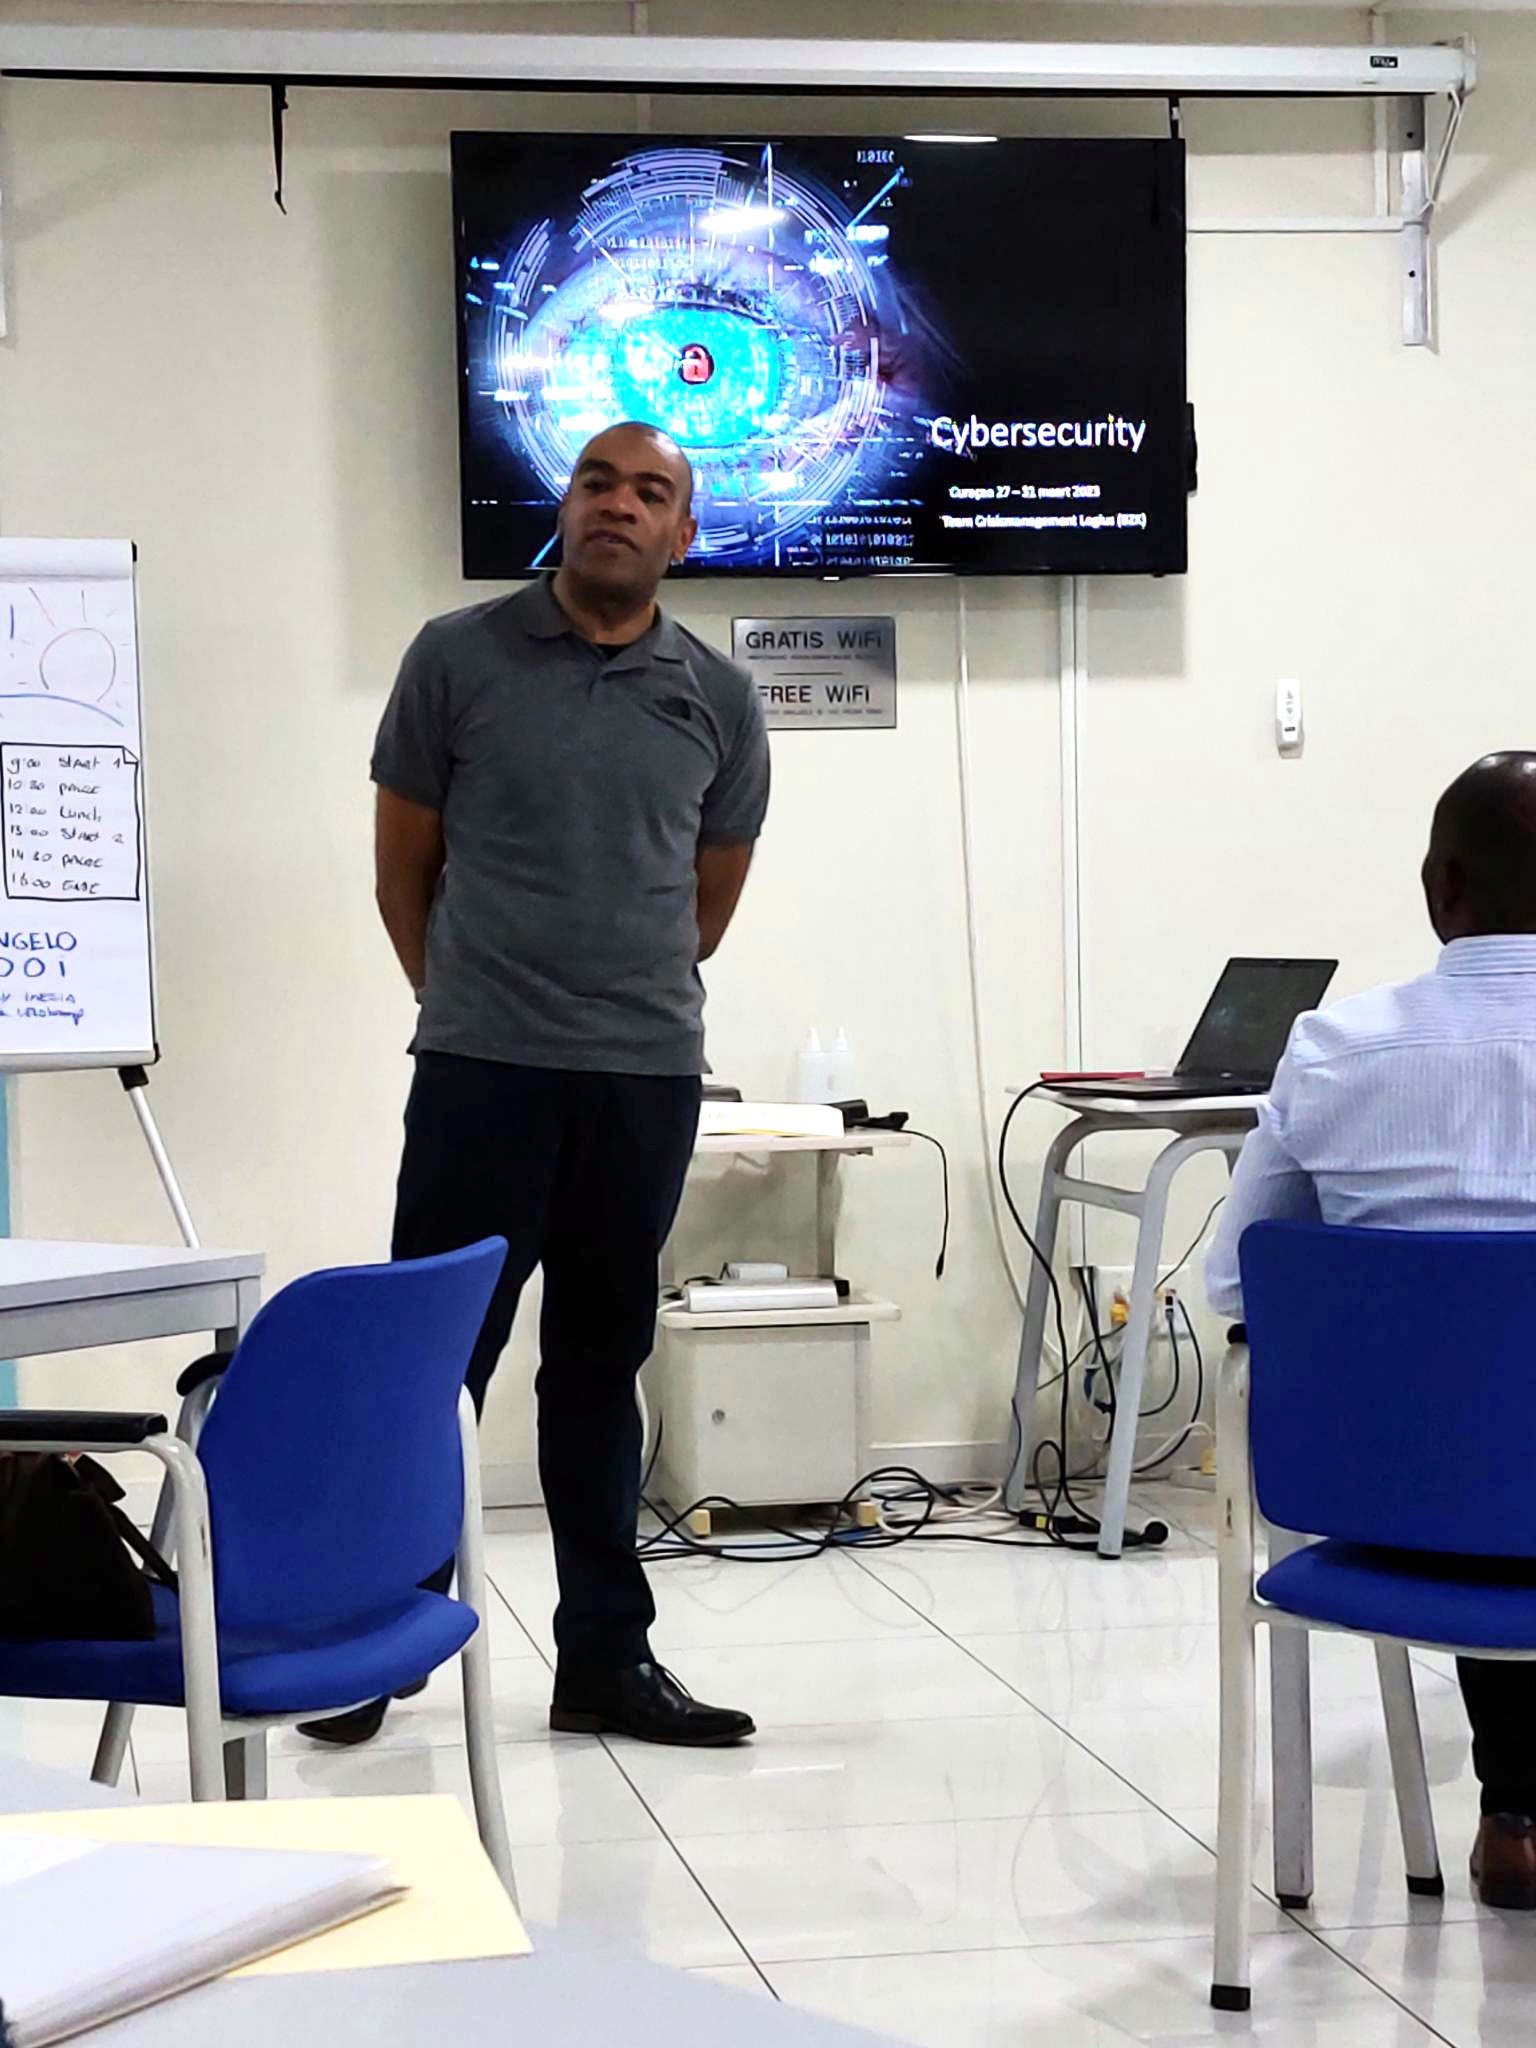 Viangelo geeft de cyber awareness training 